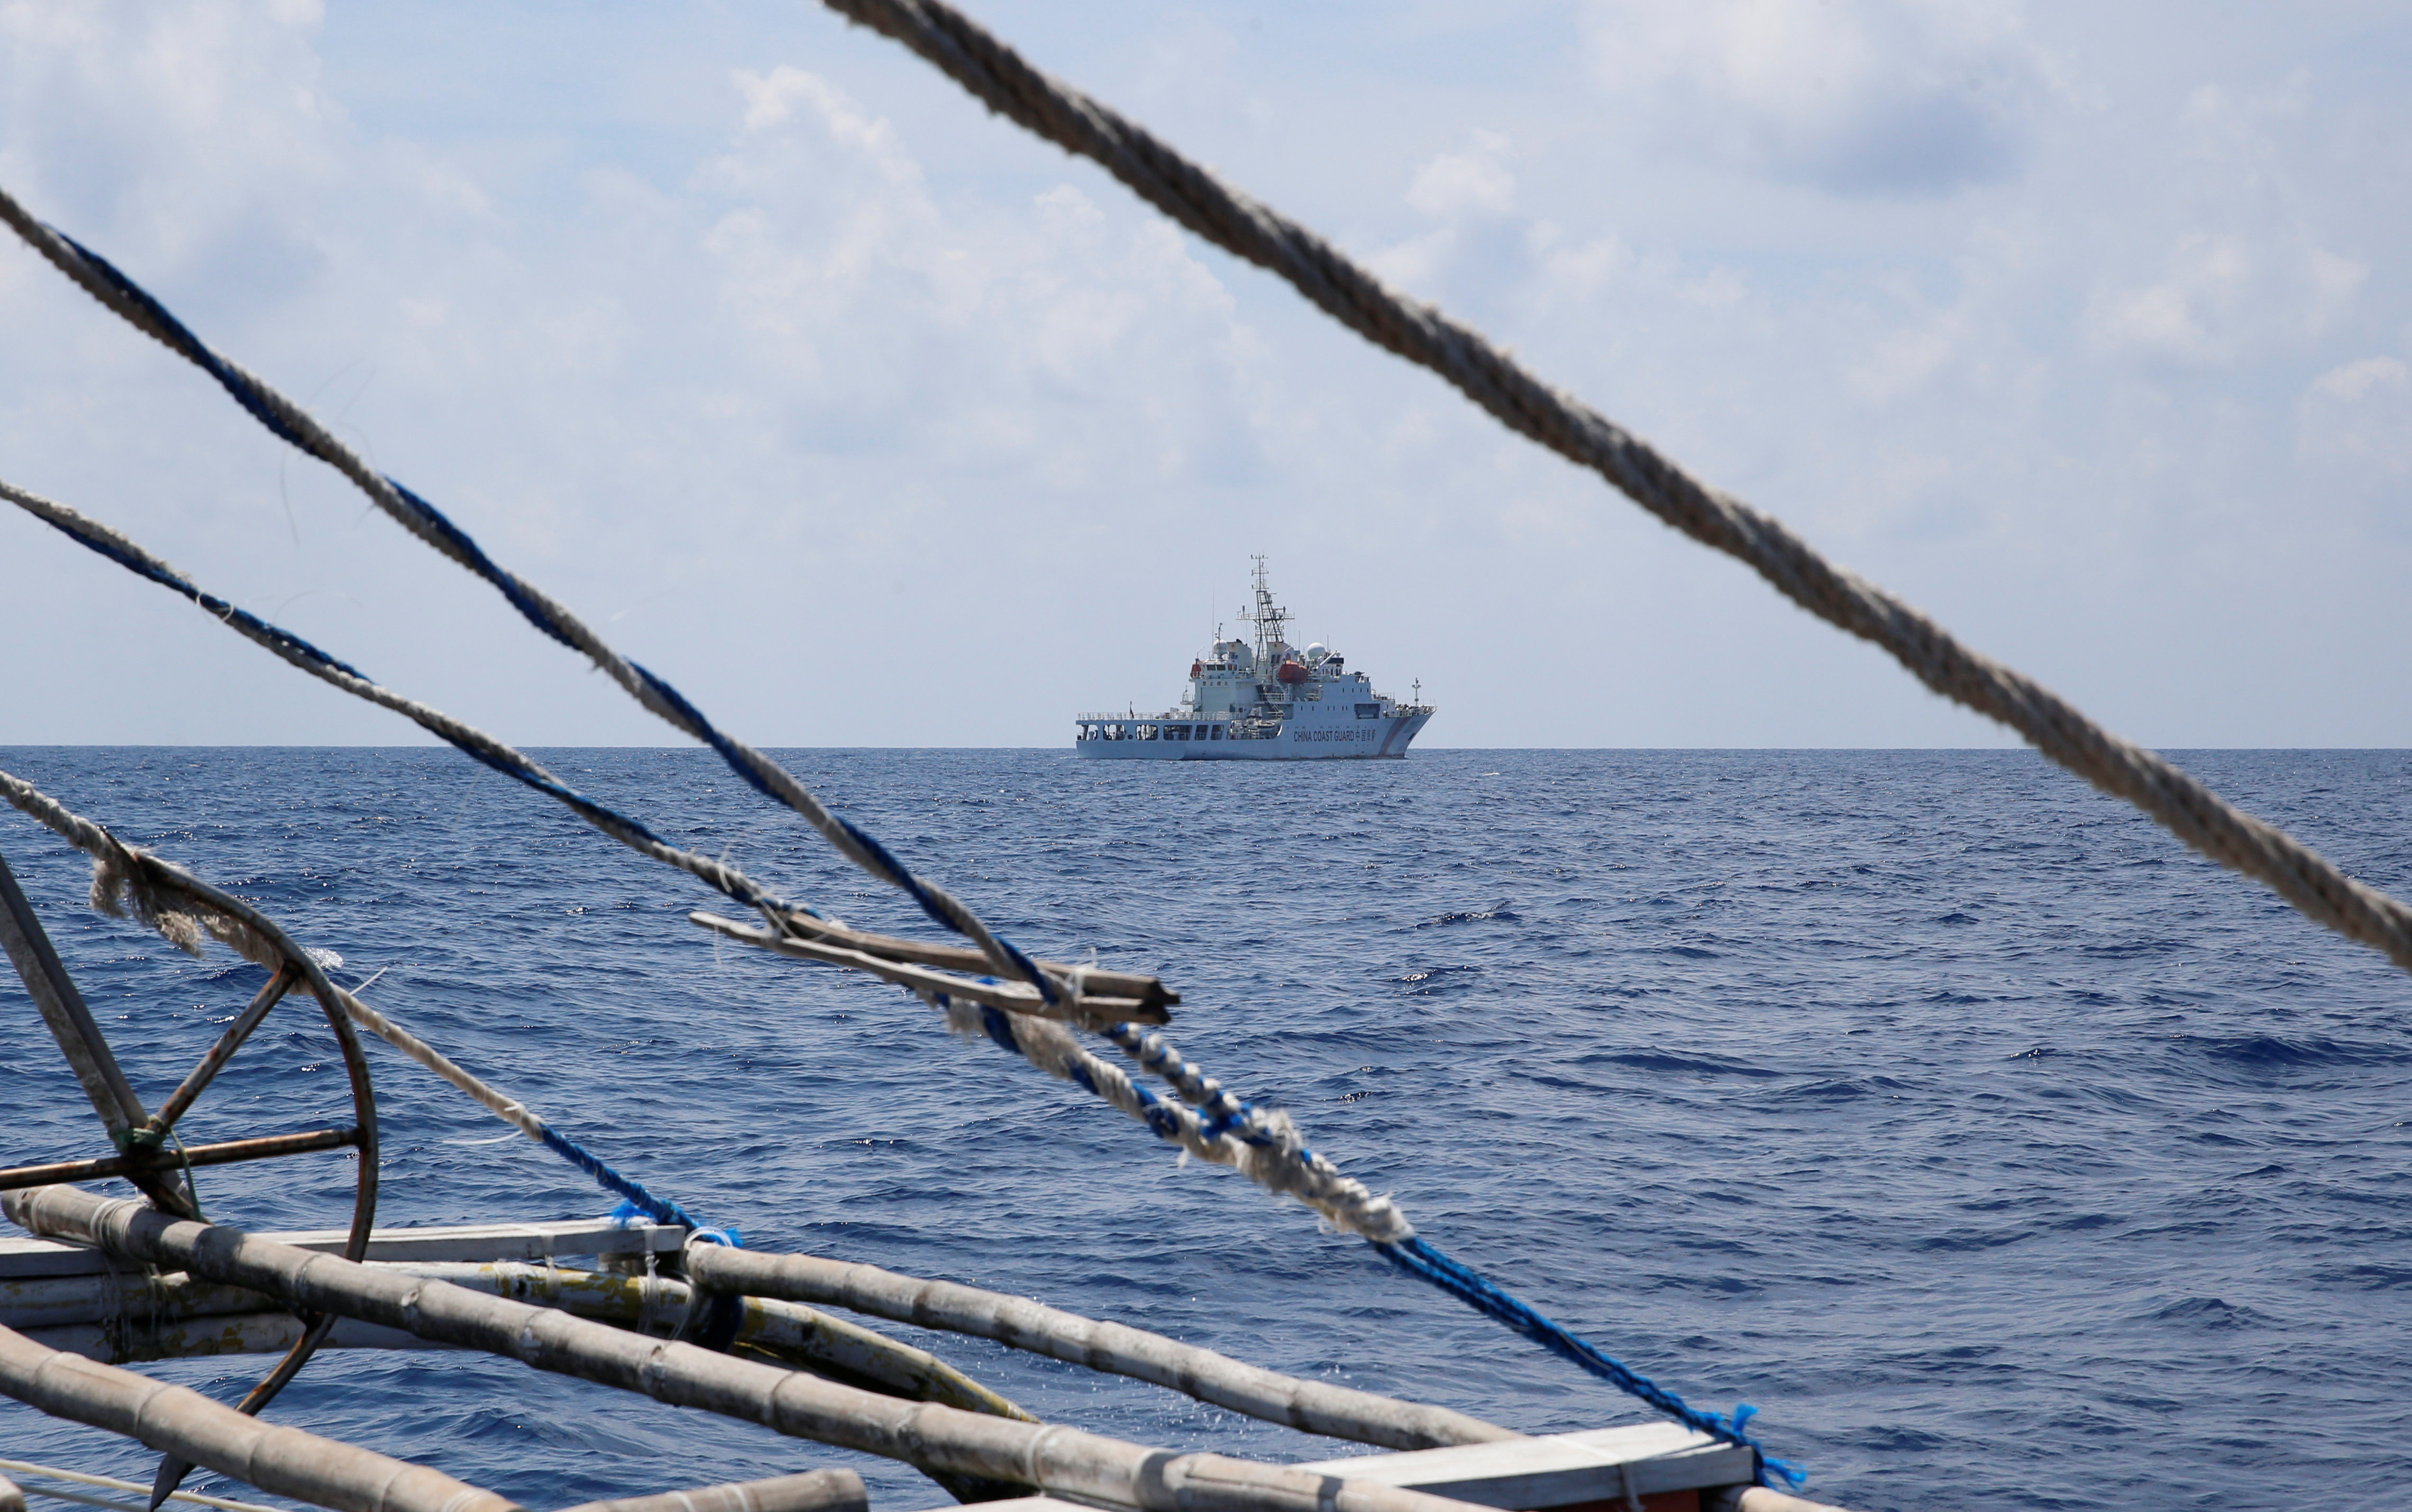 漁師に支援物資供給、フィリピン民間船団　南シナ海の係争海域